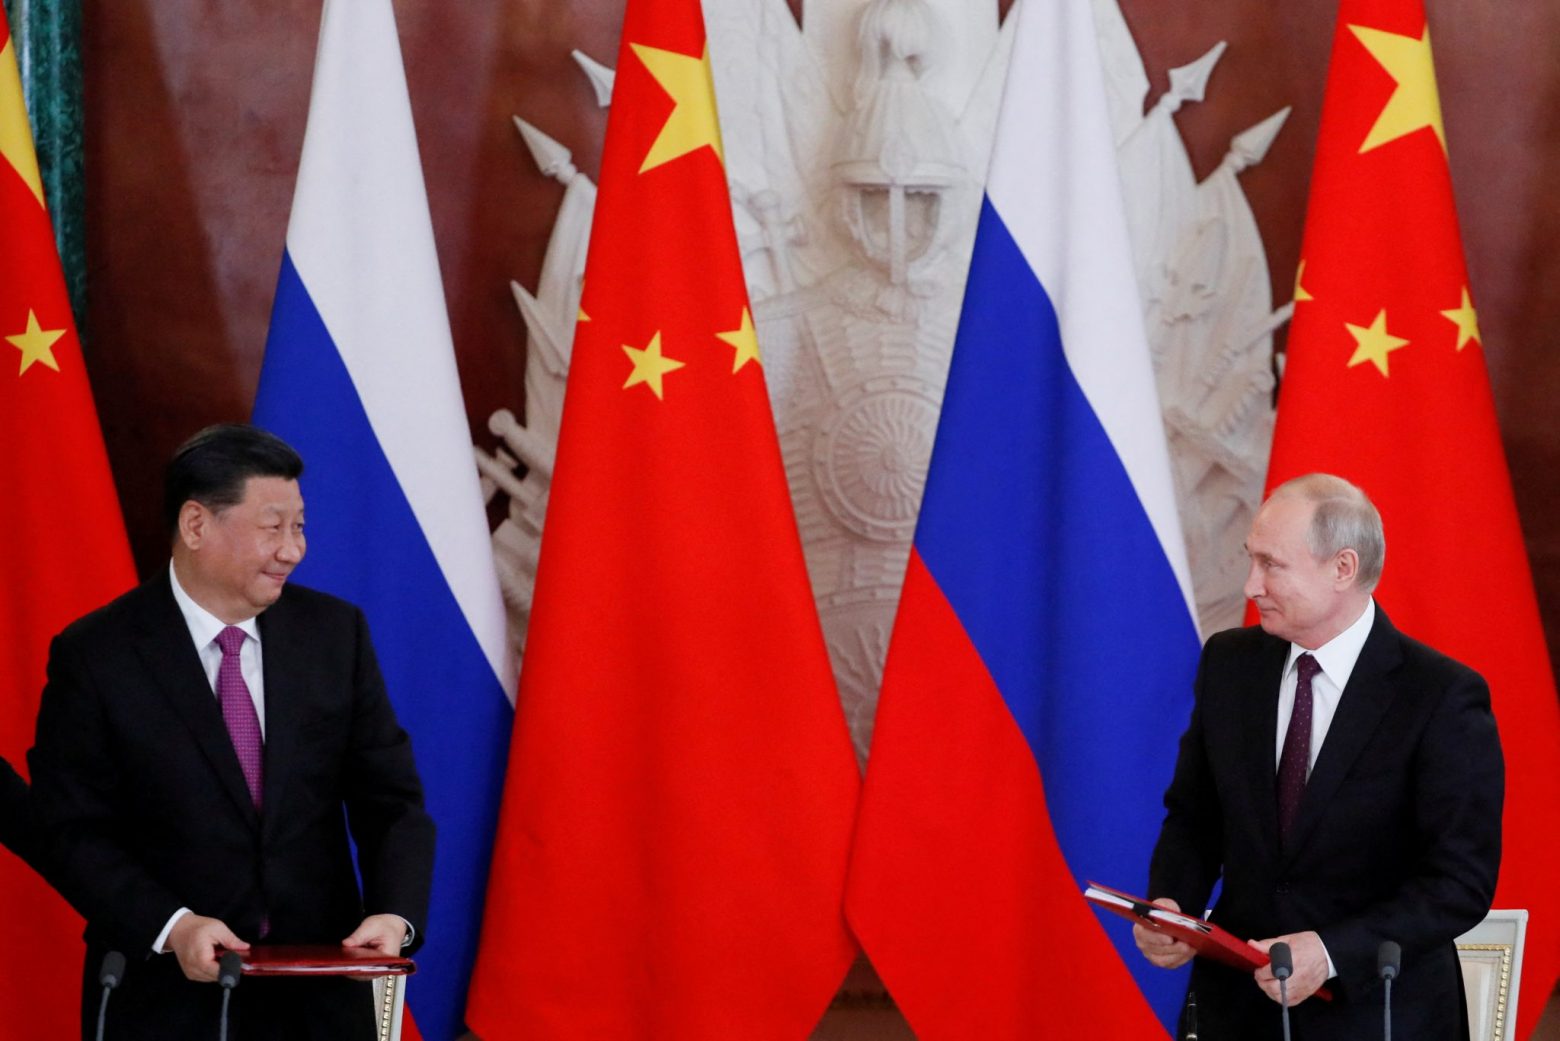 Κίνα – Ρωσία: Από το διπλωματικό επίπεδο έως το οικονομικο-εμπορικό η διμερής συνεργασία αναβαθμίζεται συνεχώς